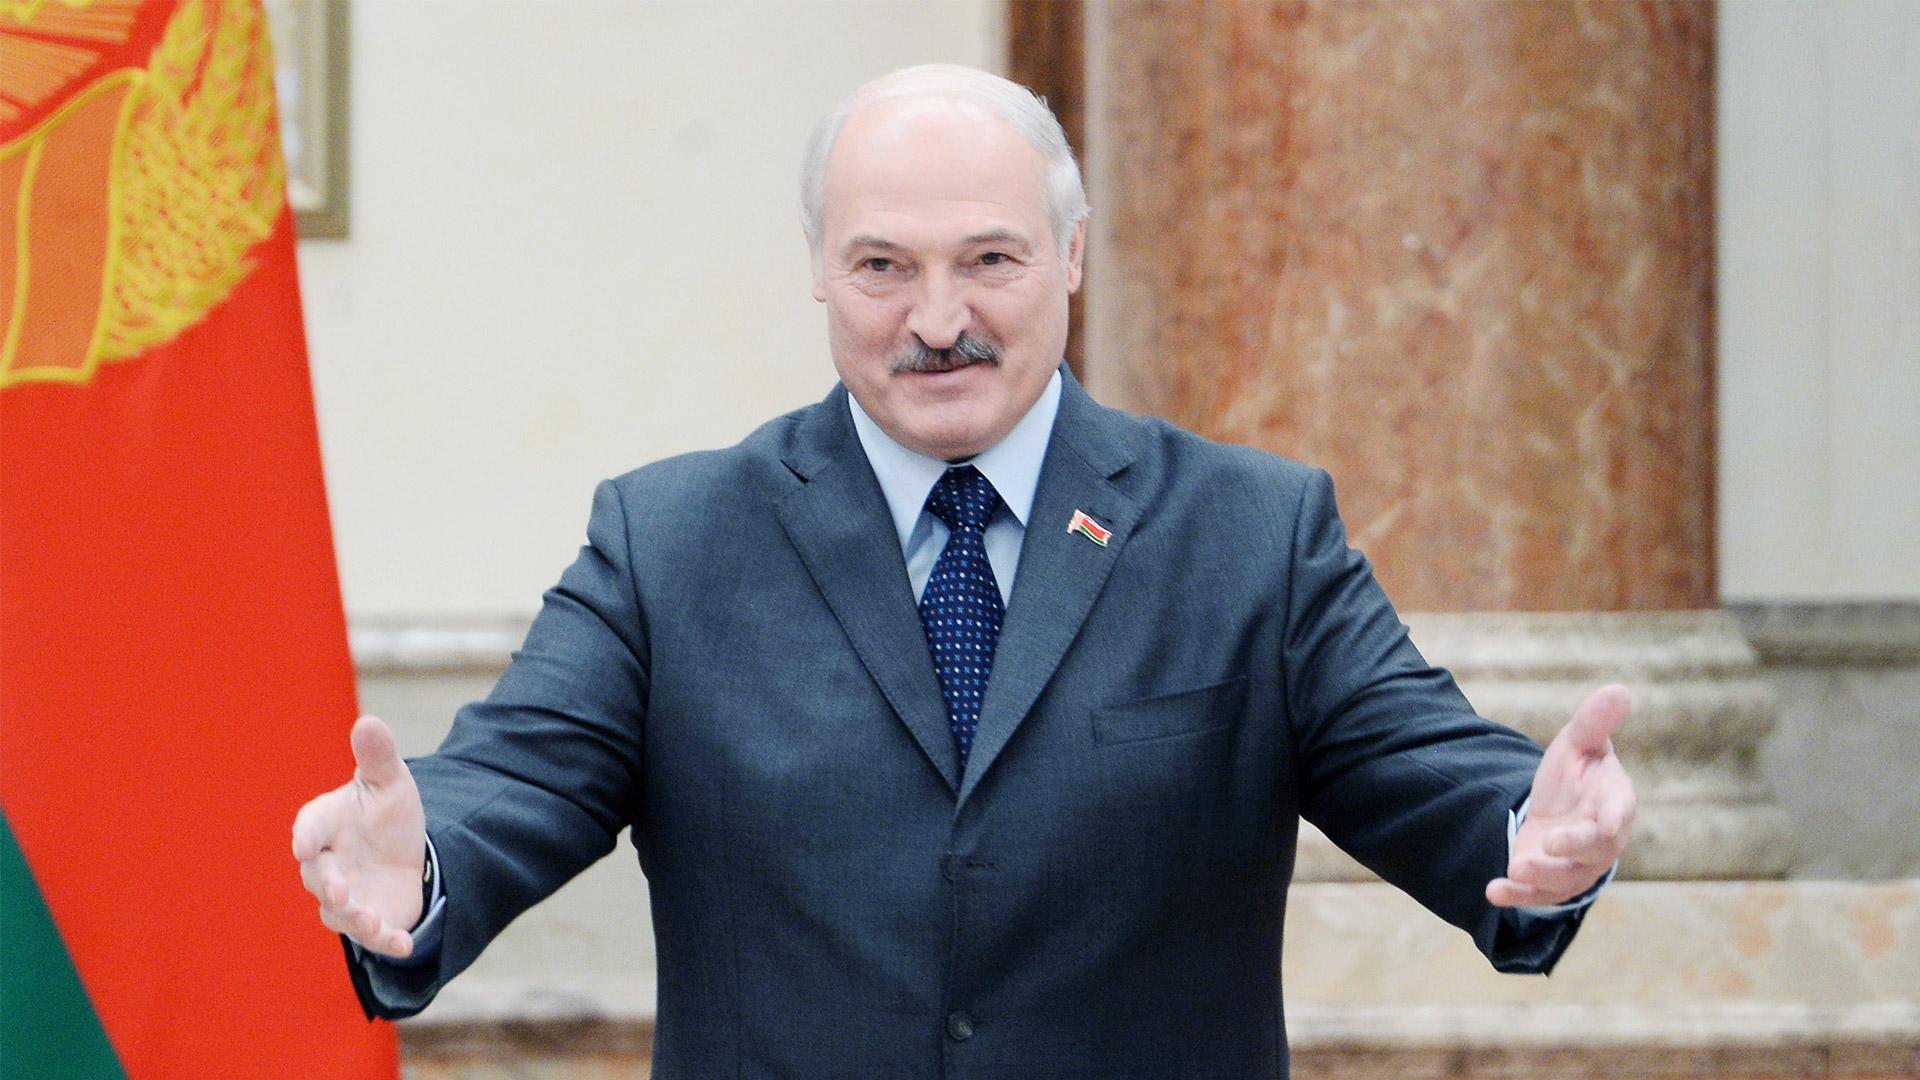 Белоруссия готова принять глав стран-партнеров по ЕАЭС в Минске